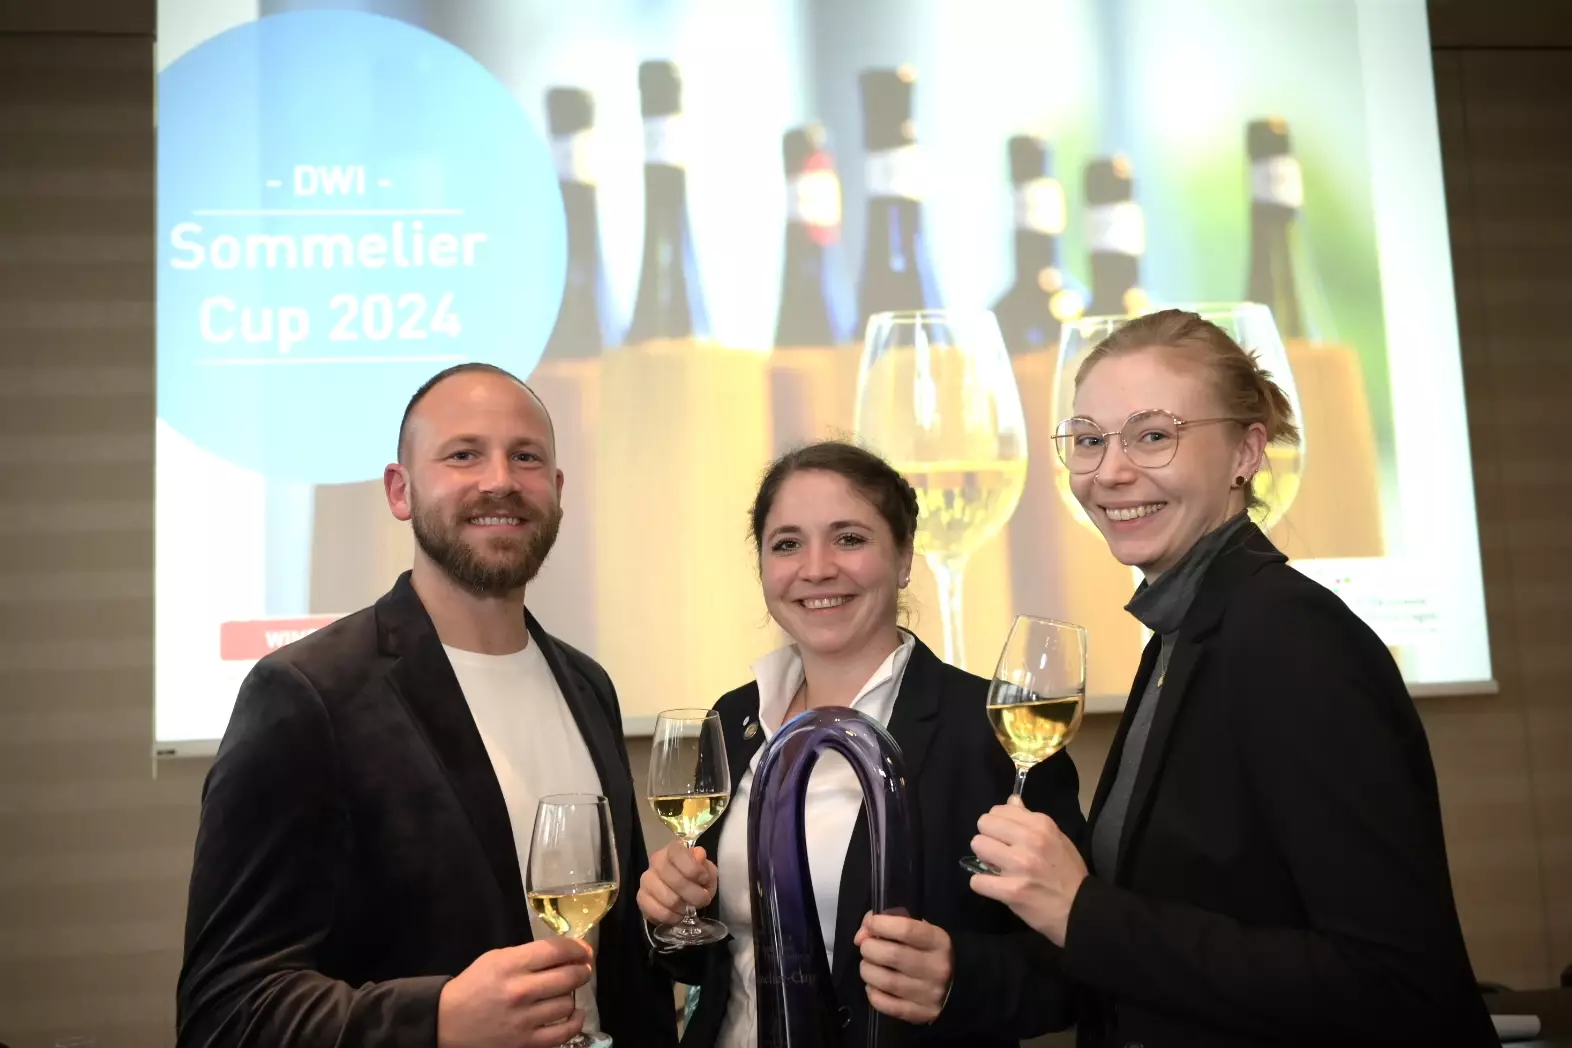 v.l.n.r.: Lukas Sermann, Sommelier und Winzer in Altenahr (2.), Katharina Iglesias, Sommelière in der wineBank Hamburg (1.), Maike Witfang, Sommelière im Atrium Hotel Mainz (3.).